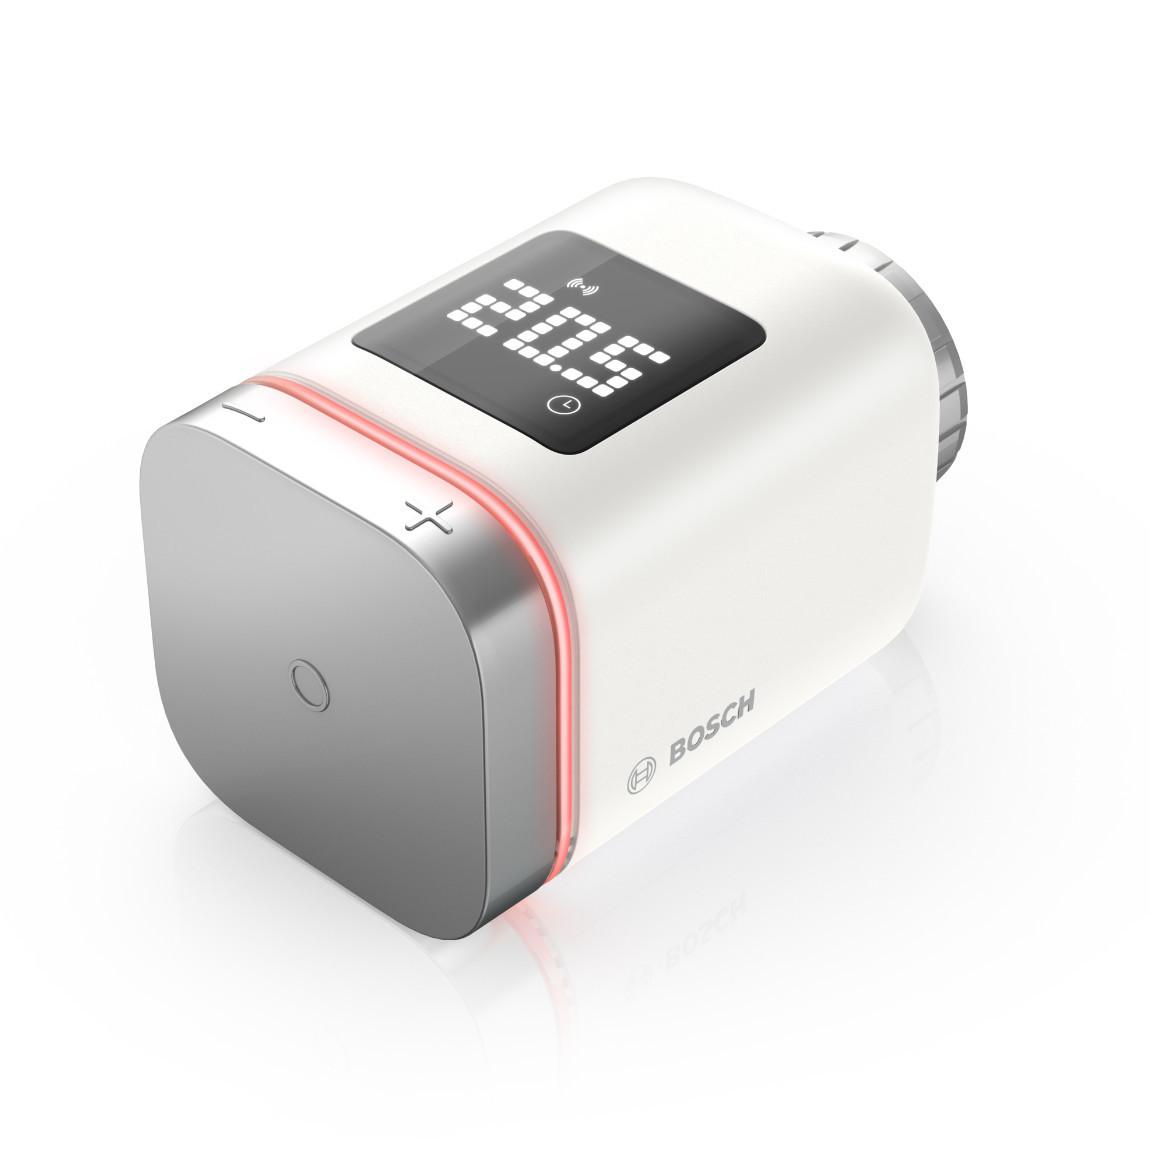 Bosch Smart Home Heizkörper-Thermostat II 3er-Set_schraeg rote LED